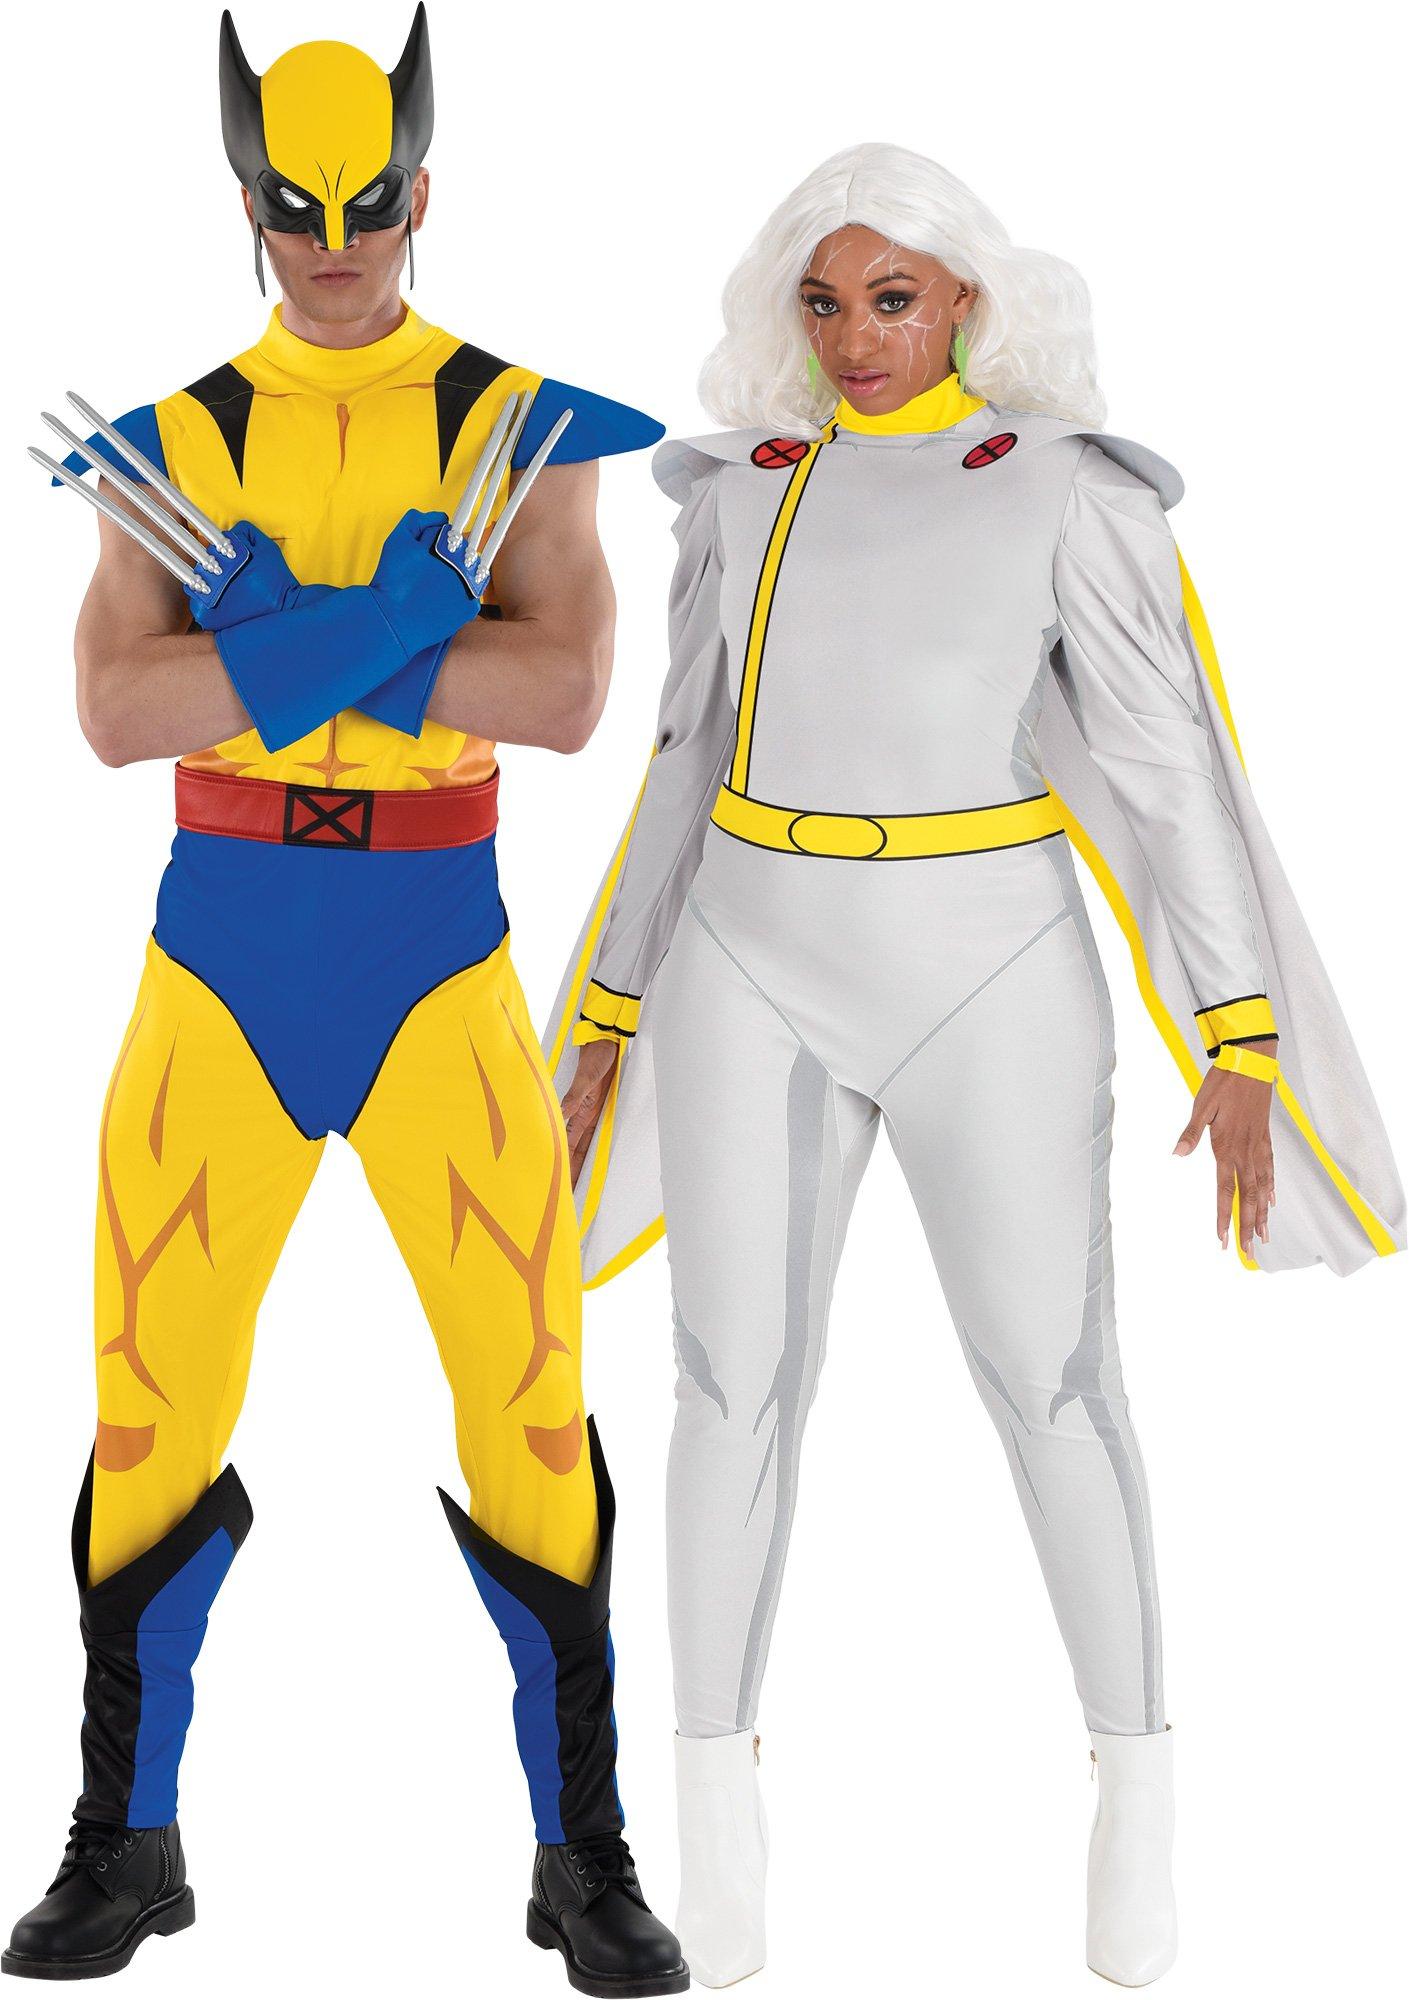 Wolverine & Storm Couples Costumes - X-Men